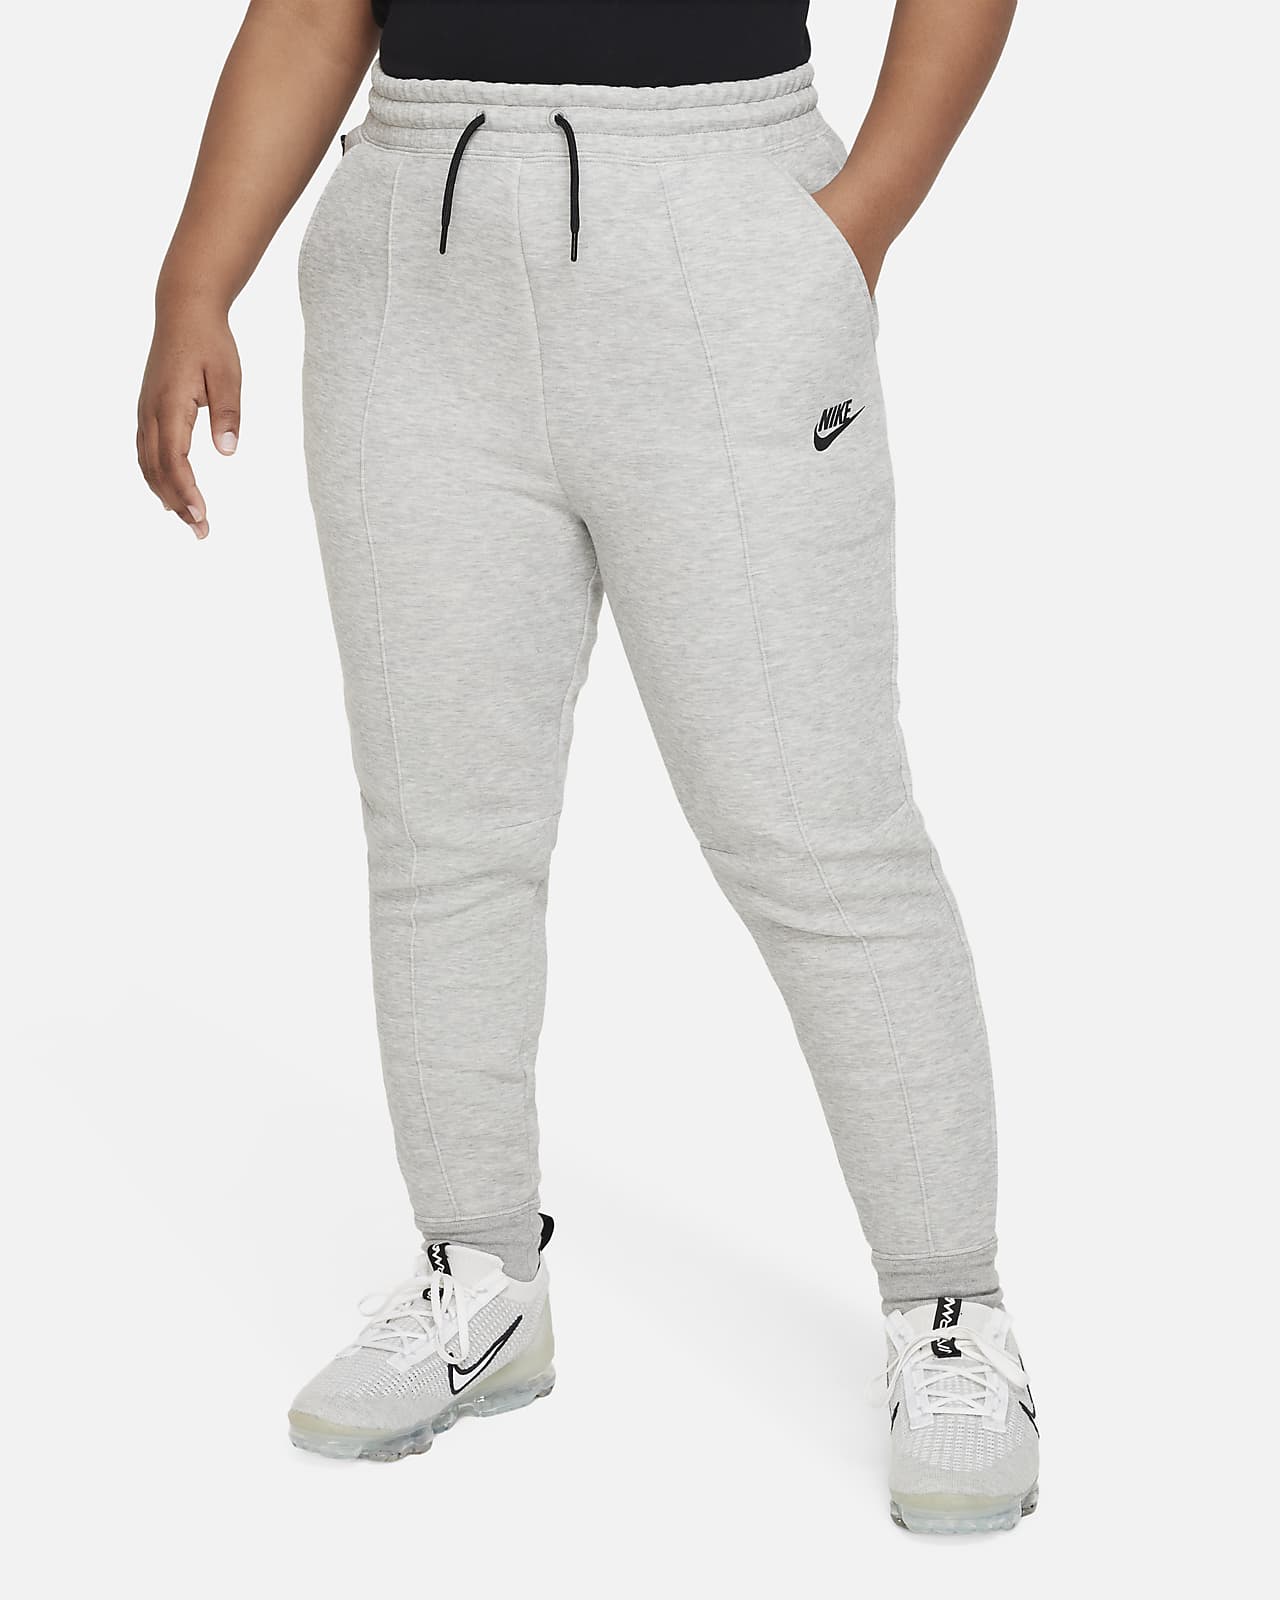 Běžecké kalhoty Nike Sportswear Tech Fleece pro větší děti (dívky) (rozšířená velikost)